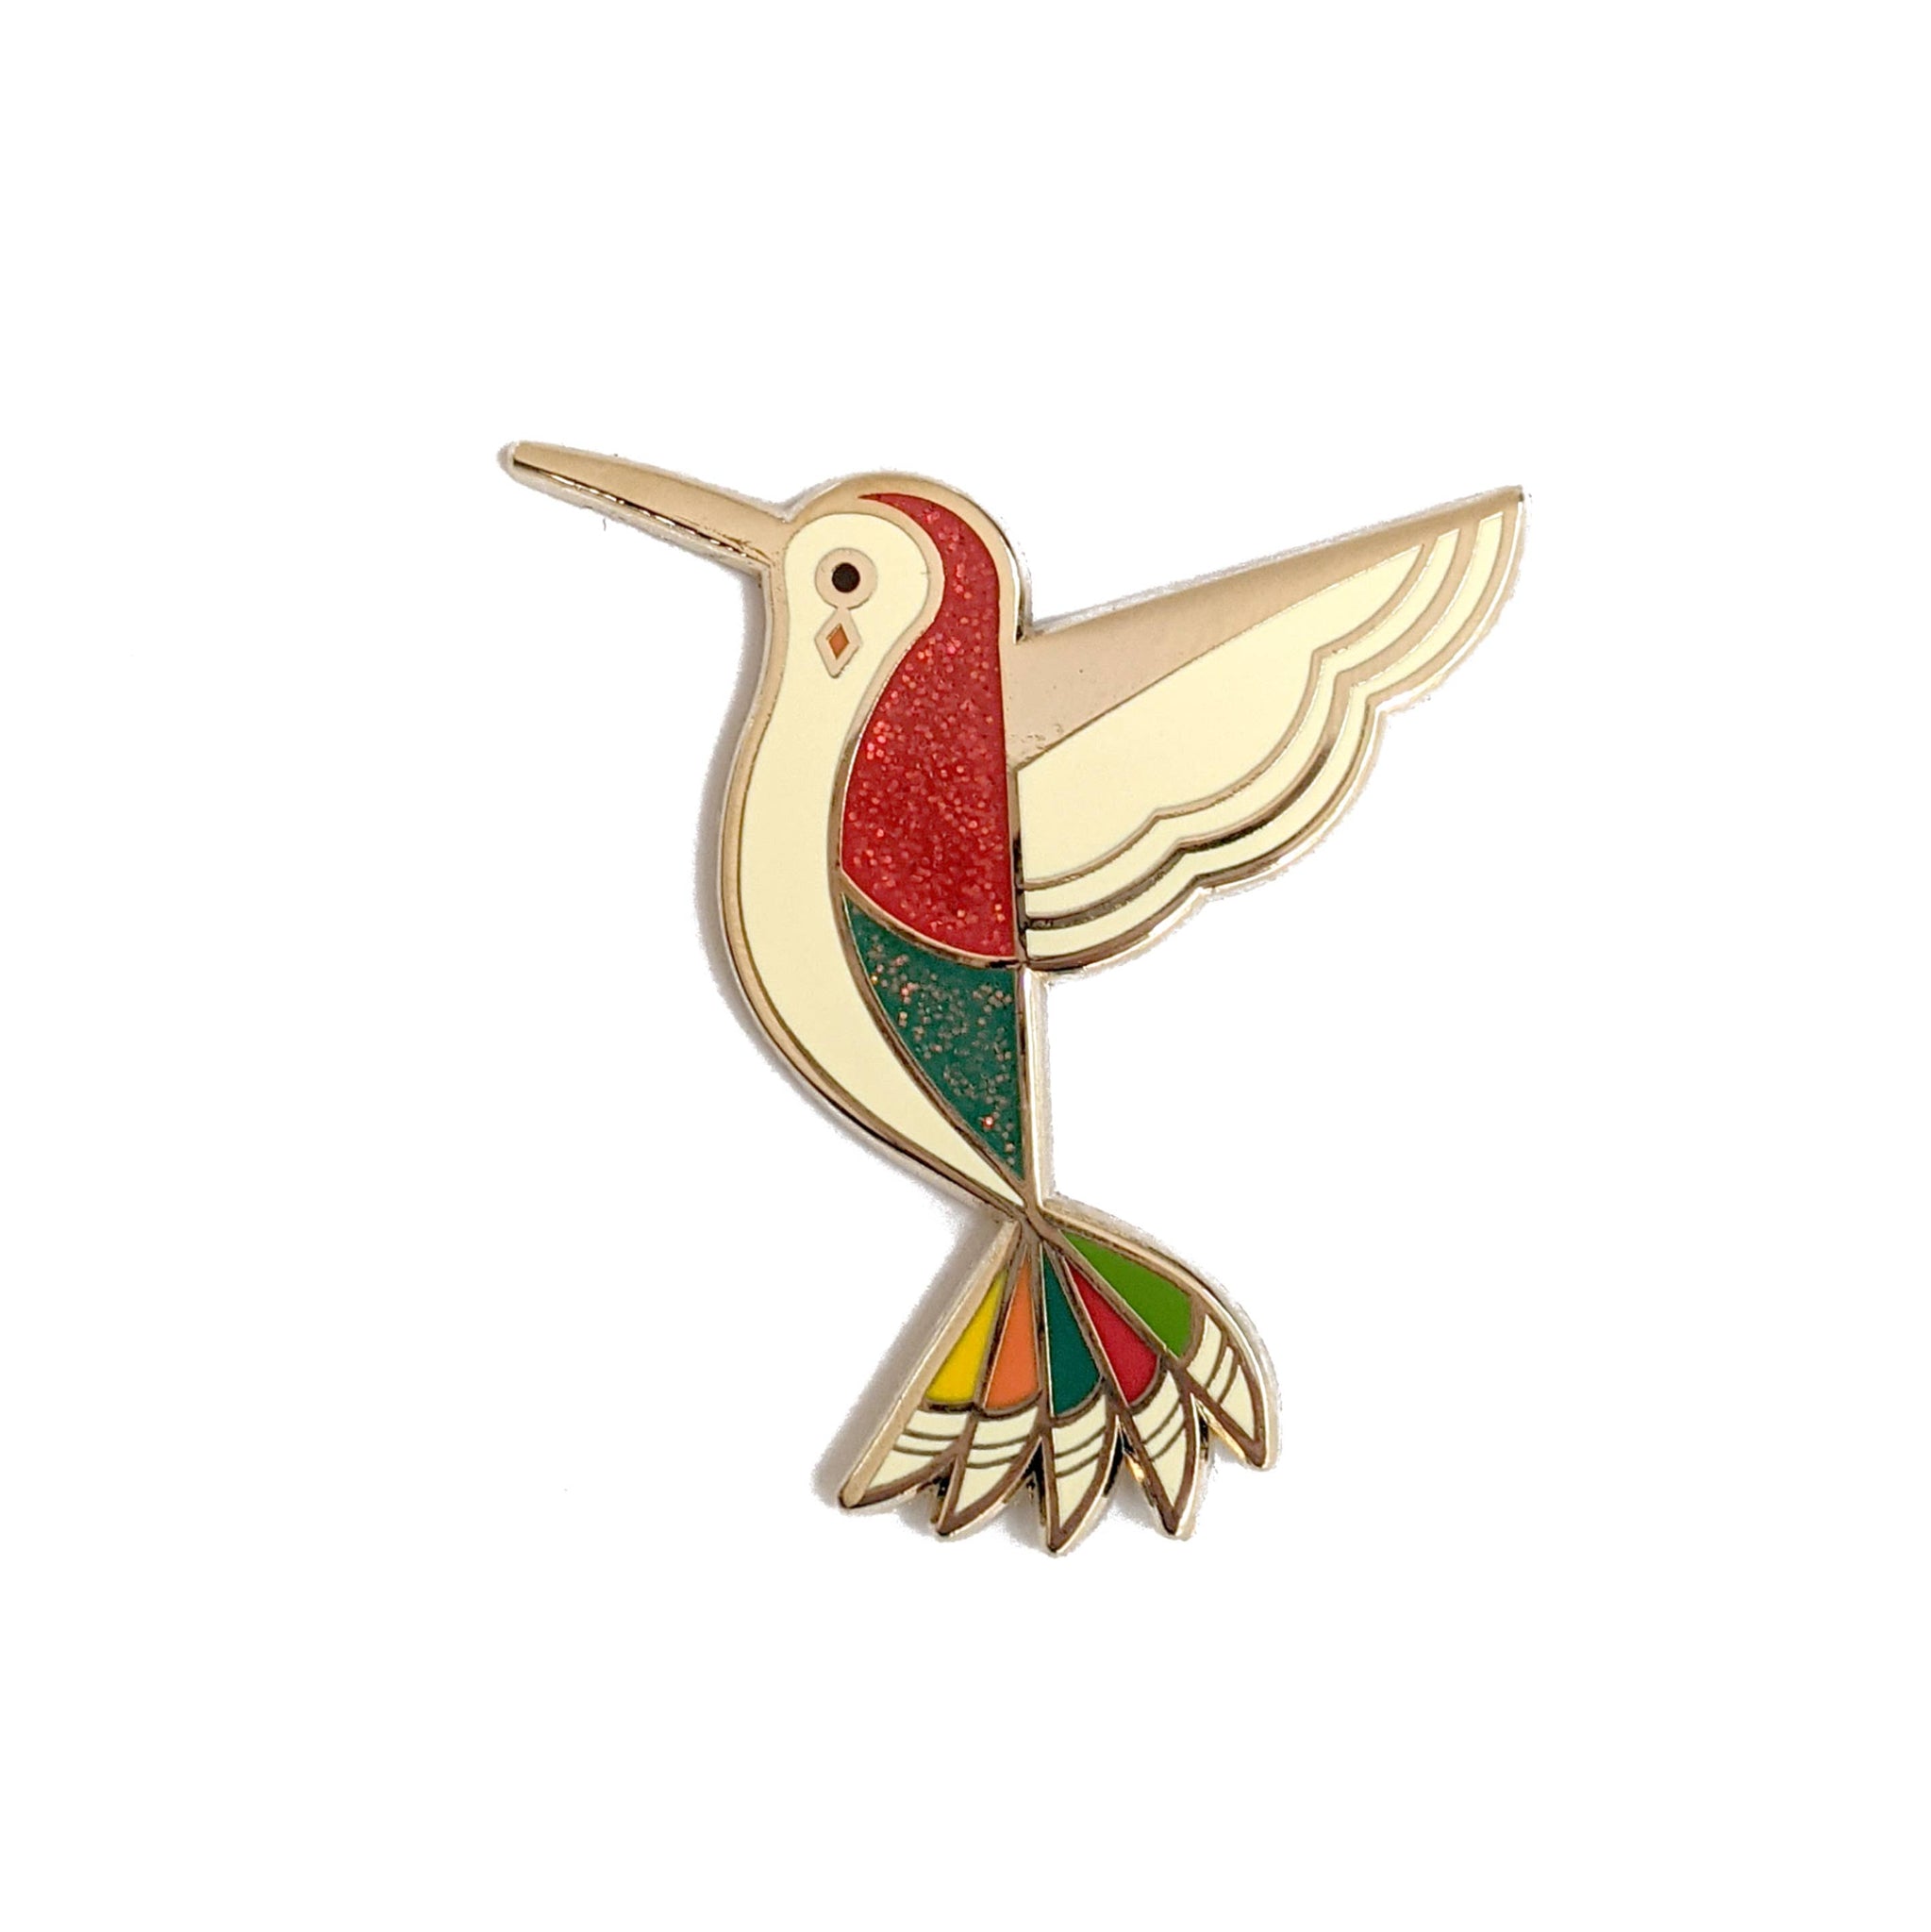 Enamel Pin | Amber Leaders Design |Hummingbird